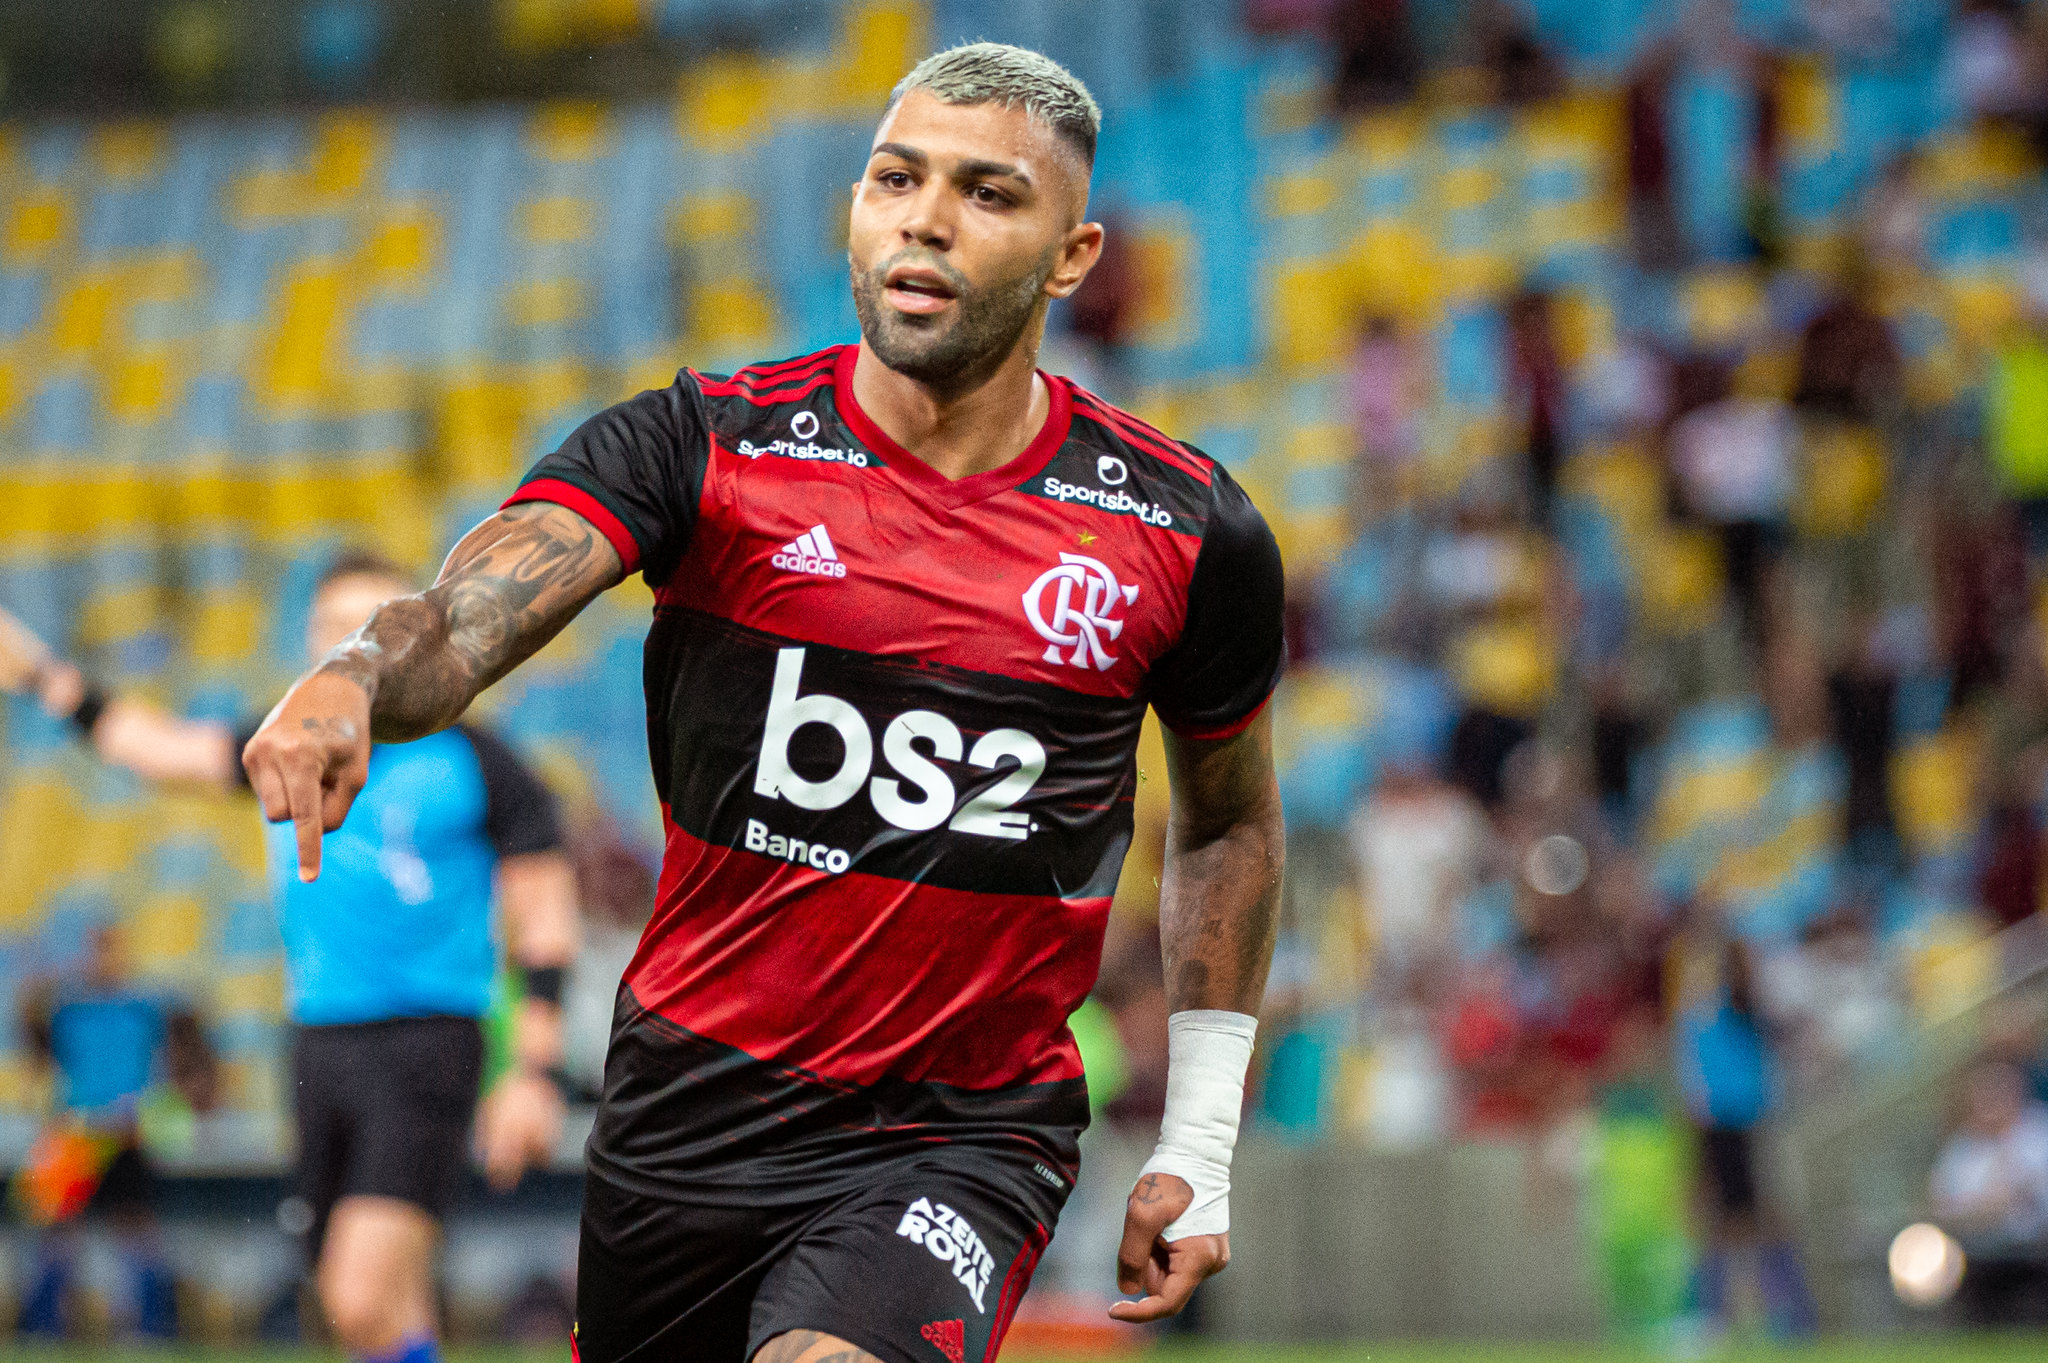 1º - Gabigol - Flamengo - 9 gols